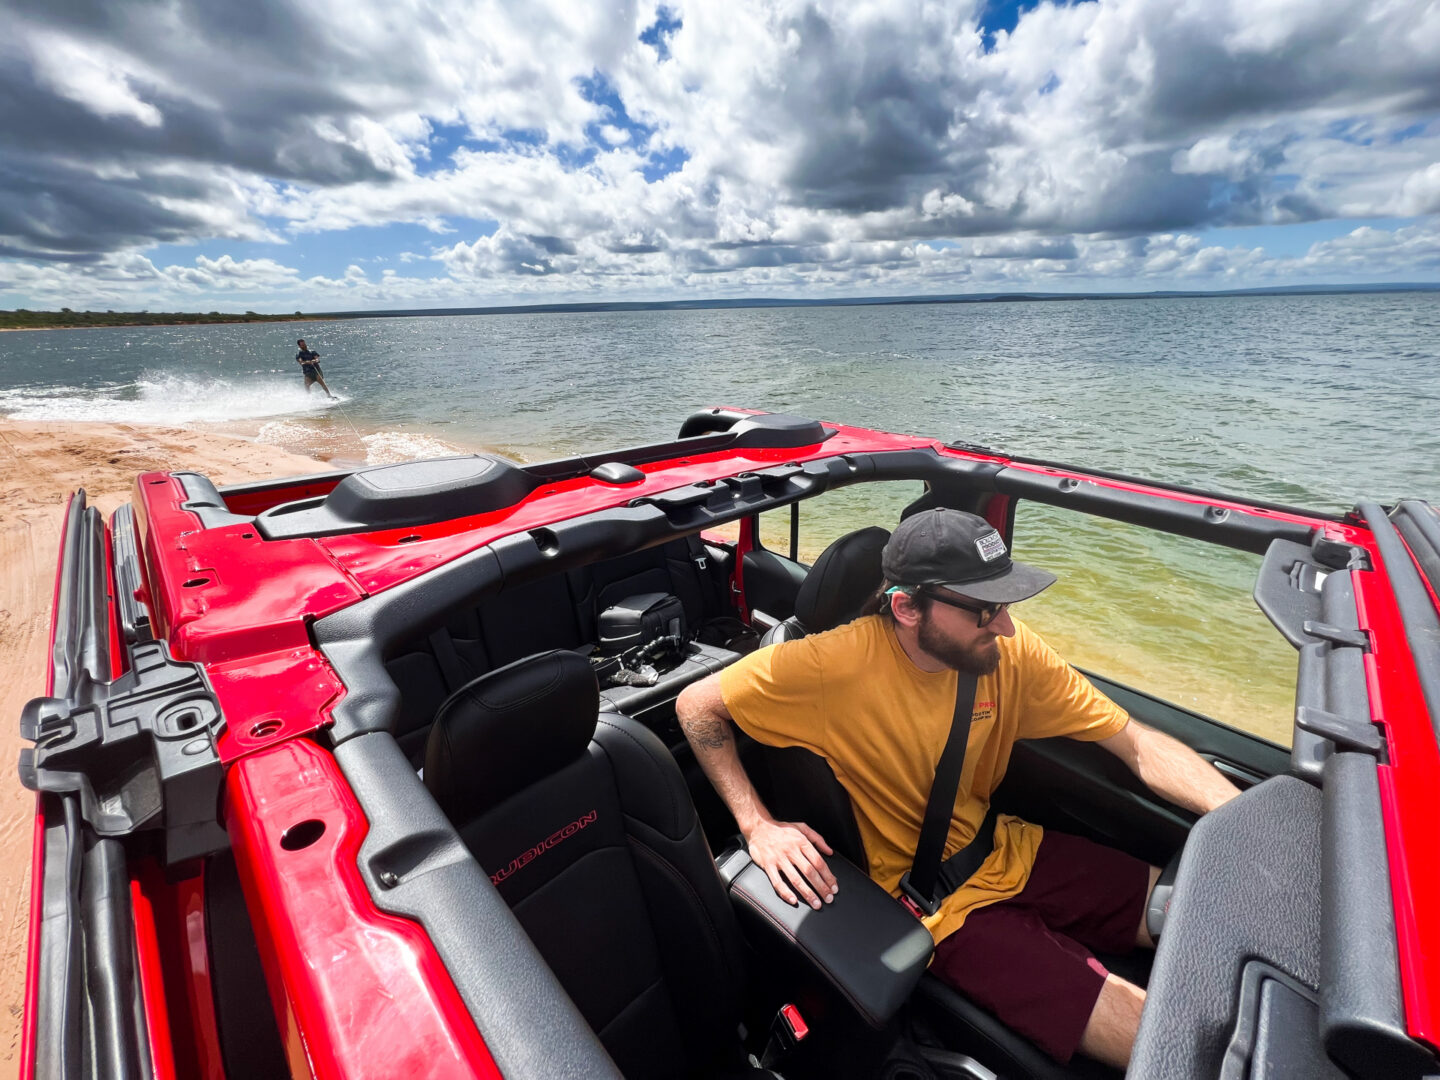 El Jeep Gladiator Rubicon combina la legendaria capacidad todoterreno de la marca Jeep con una excelente dinámica y alta seguridad. V12MAGAZINE